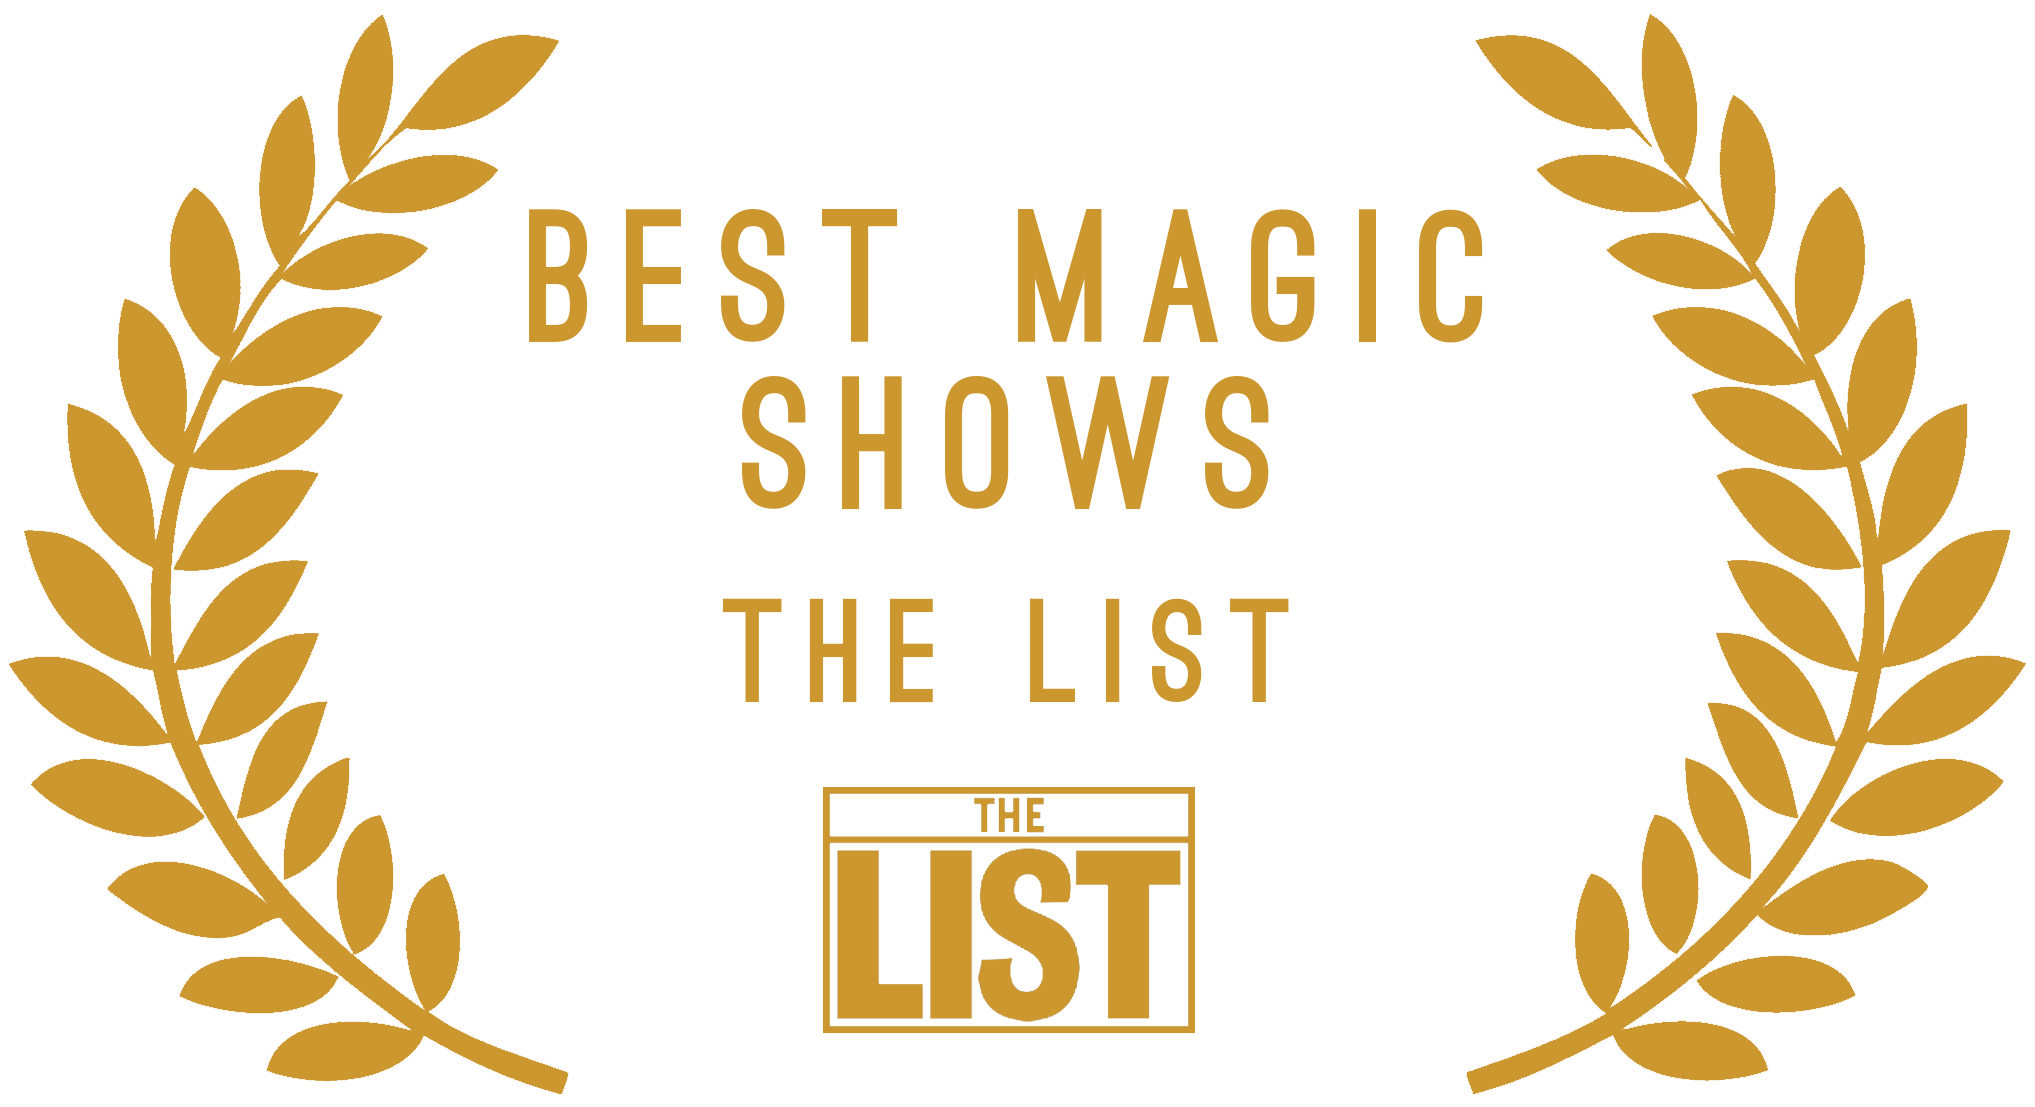 The best magic show the list award for manchester magician Aaron Calvert